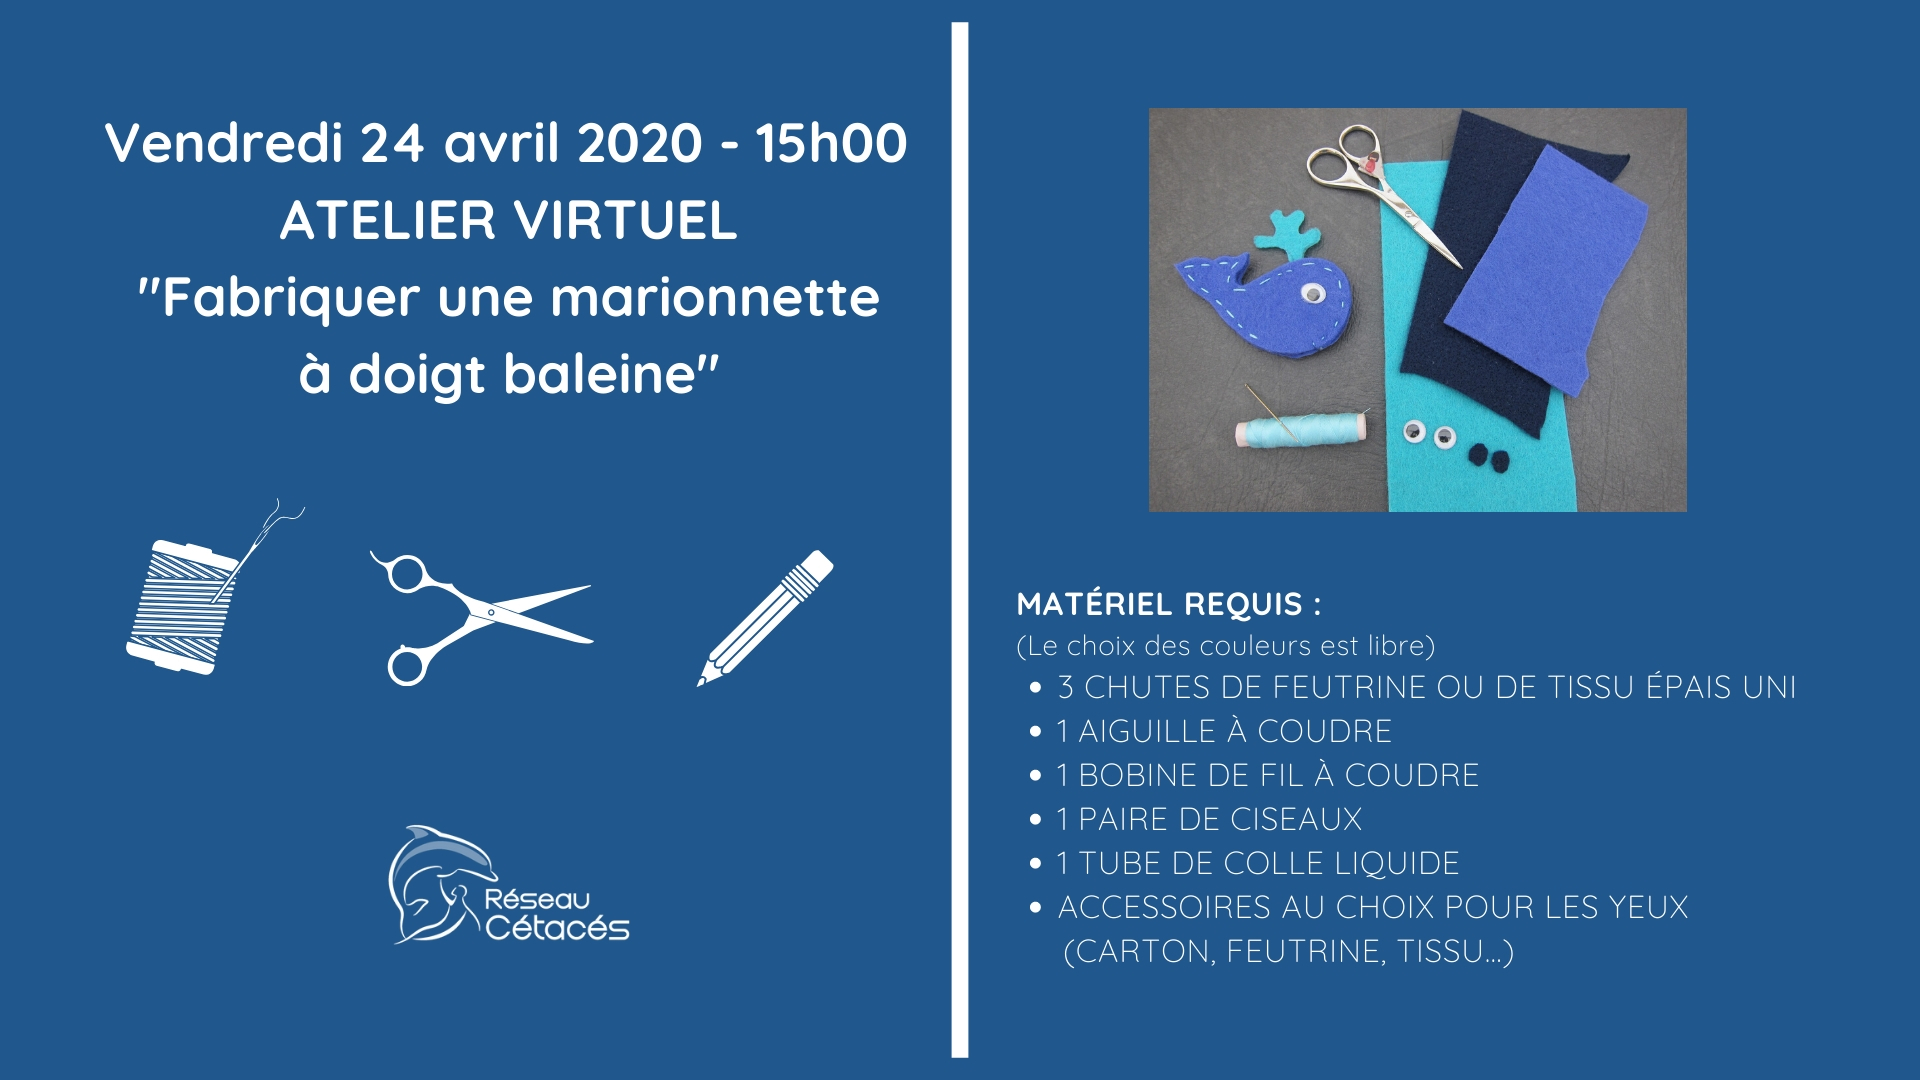 Atelier virtuel « Fabriquer une marionnette (à doigt) baleine », vendredi 24 avril à 15h ~ Depuis chez vous